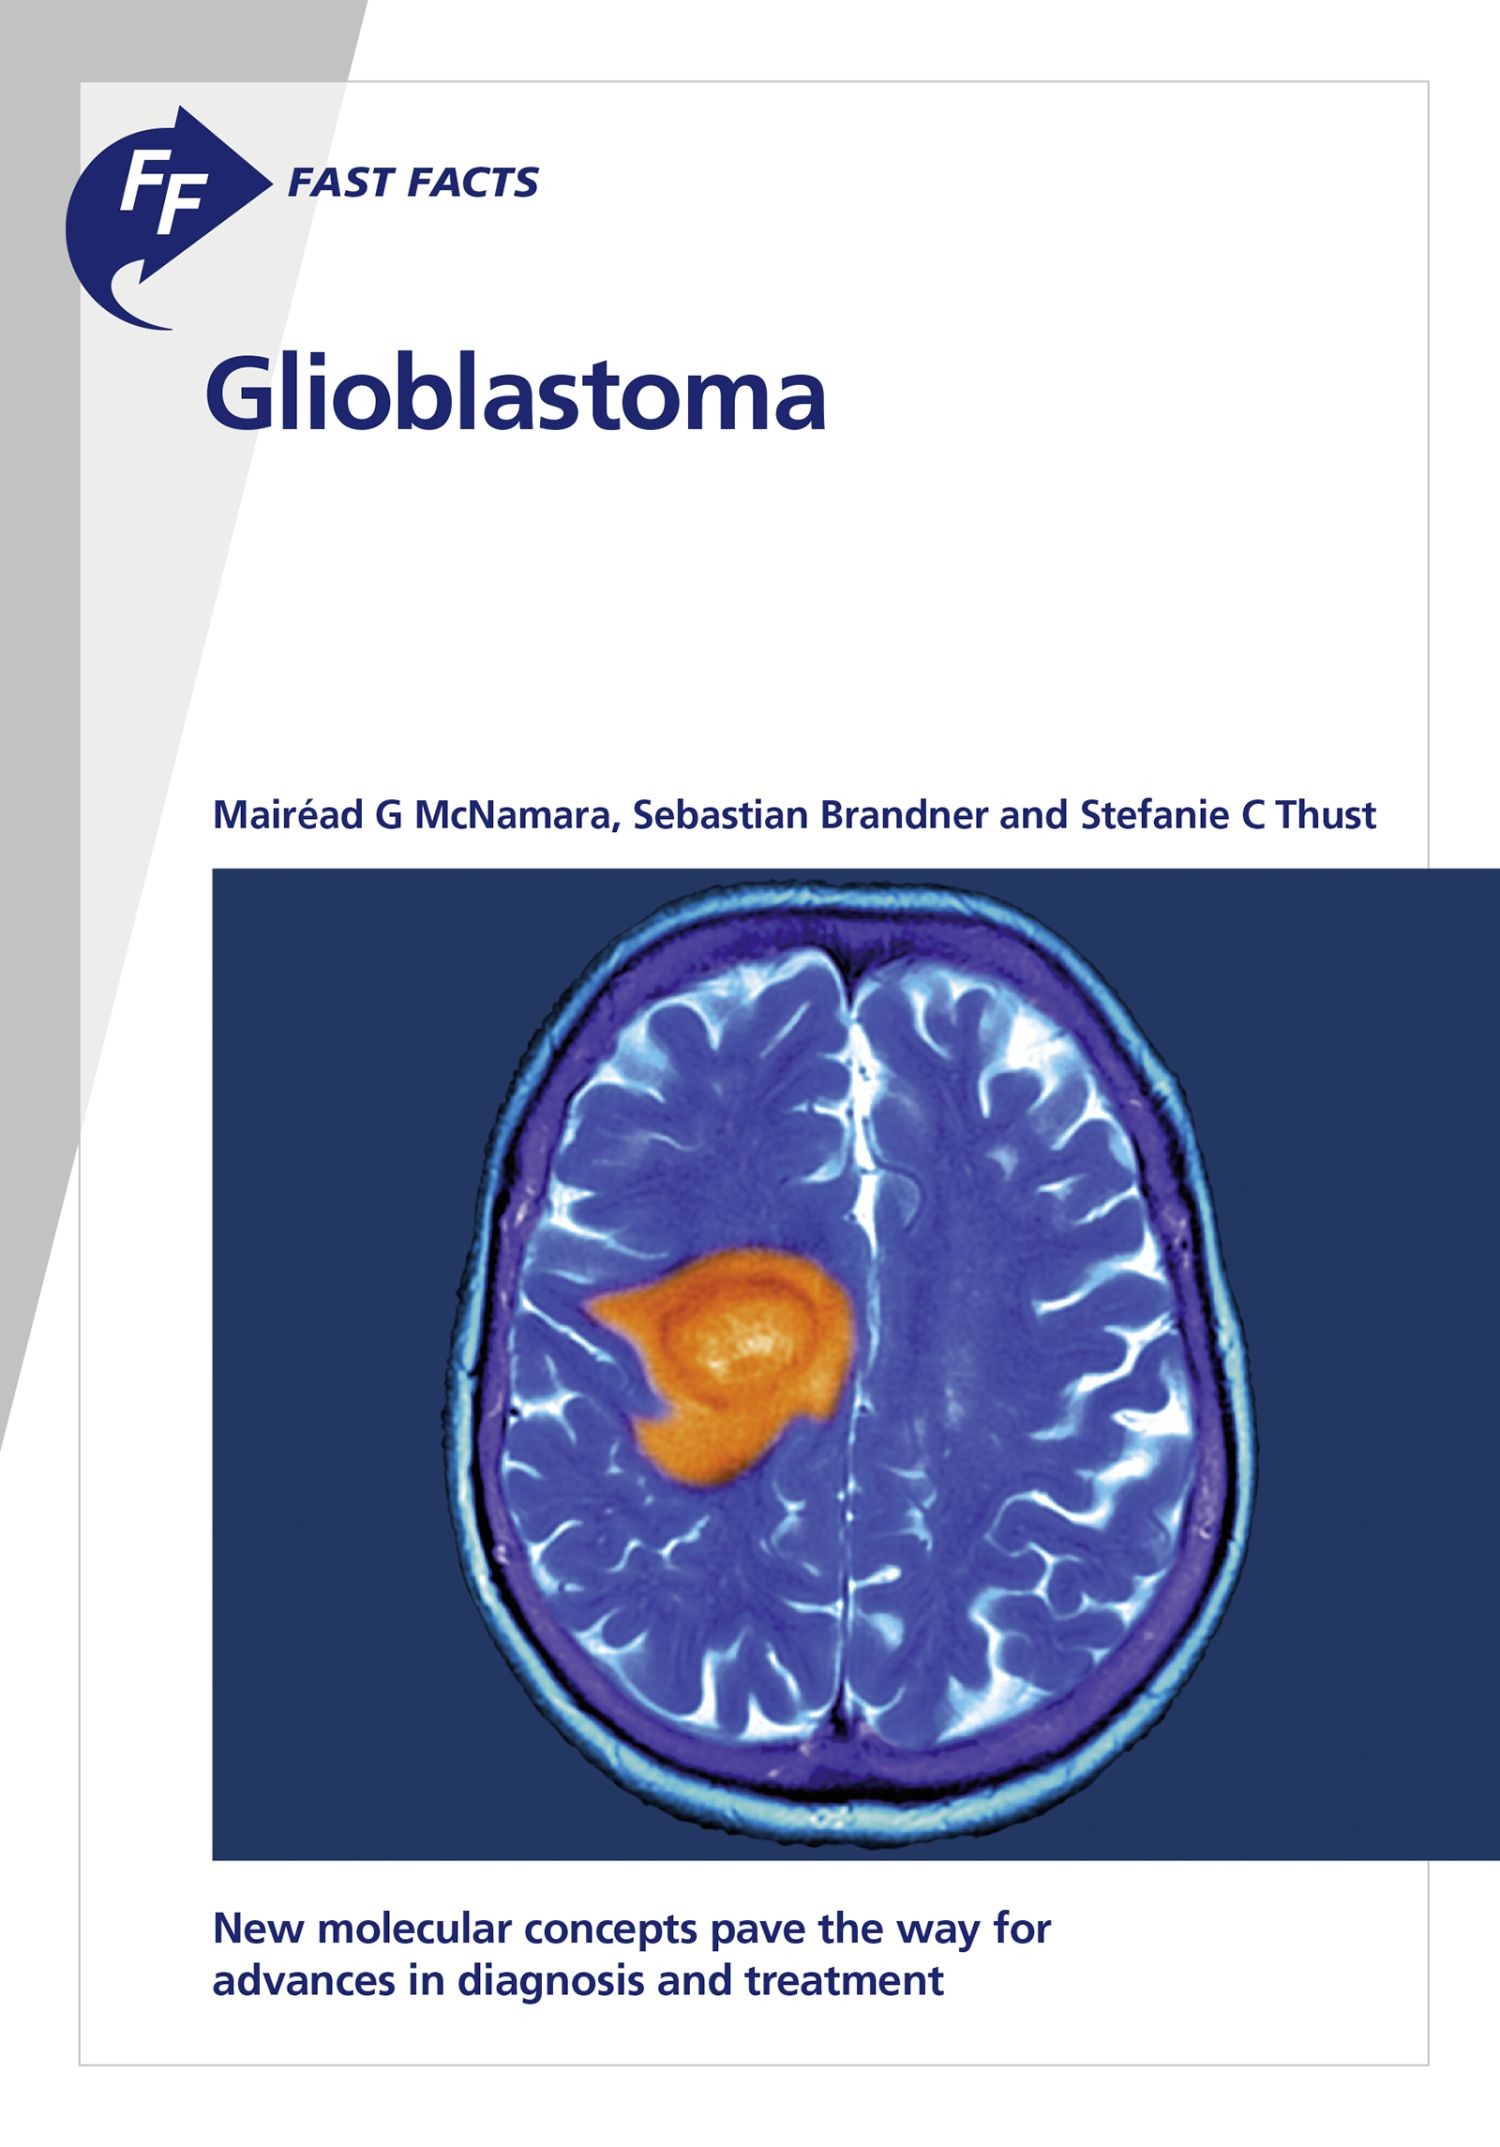 Fast Facts: Glioblastoma